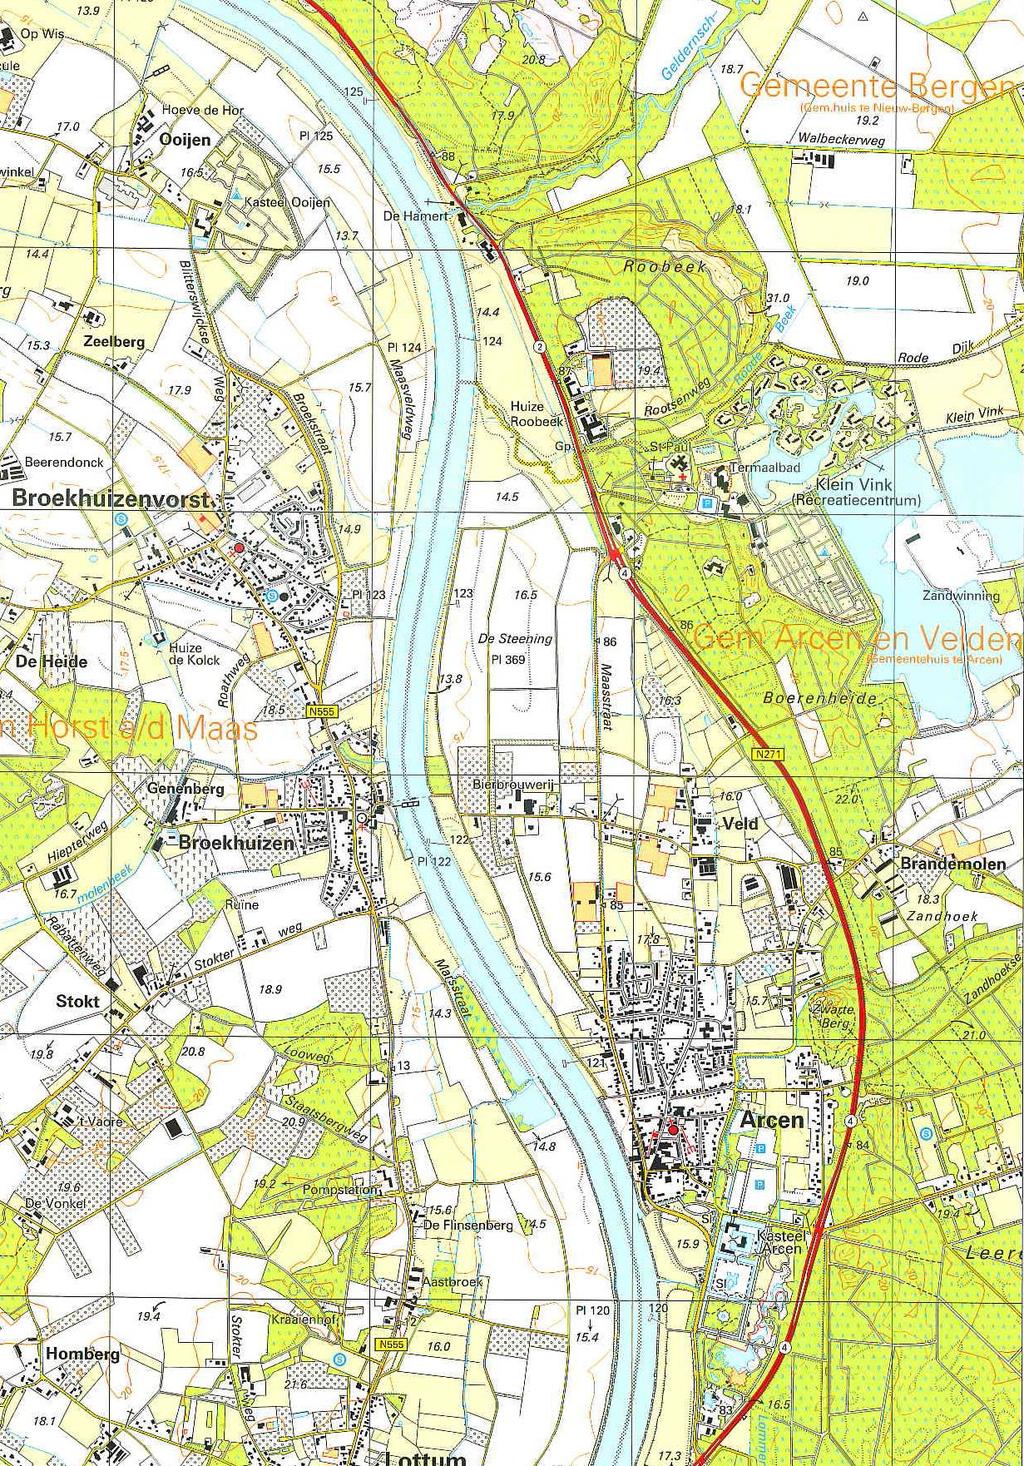 Bron: Topografische Atlas, Limburg, Uitgave ANWB, 2005, kaartblad 19 Topografische overzichtskaart